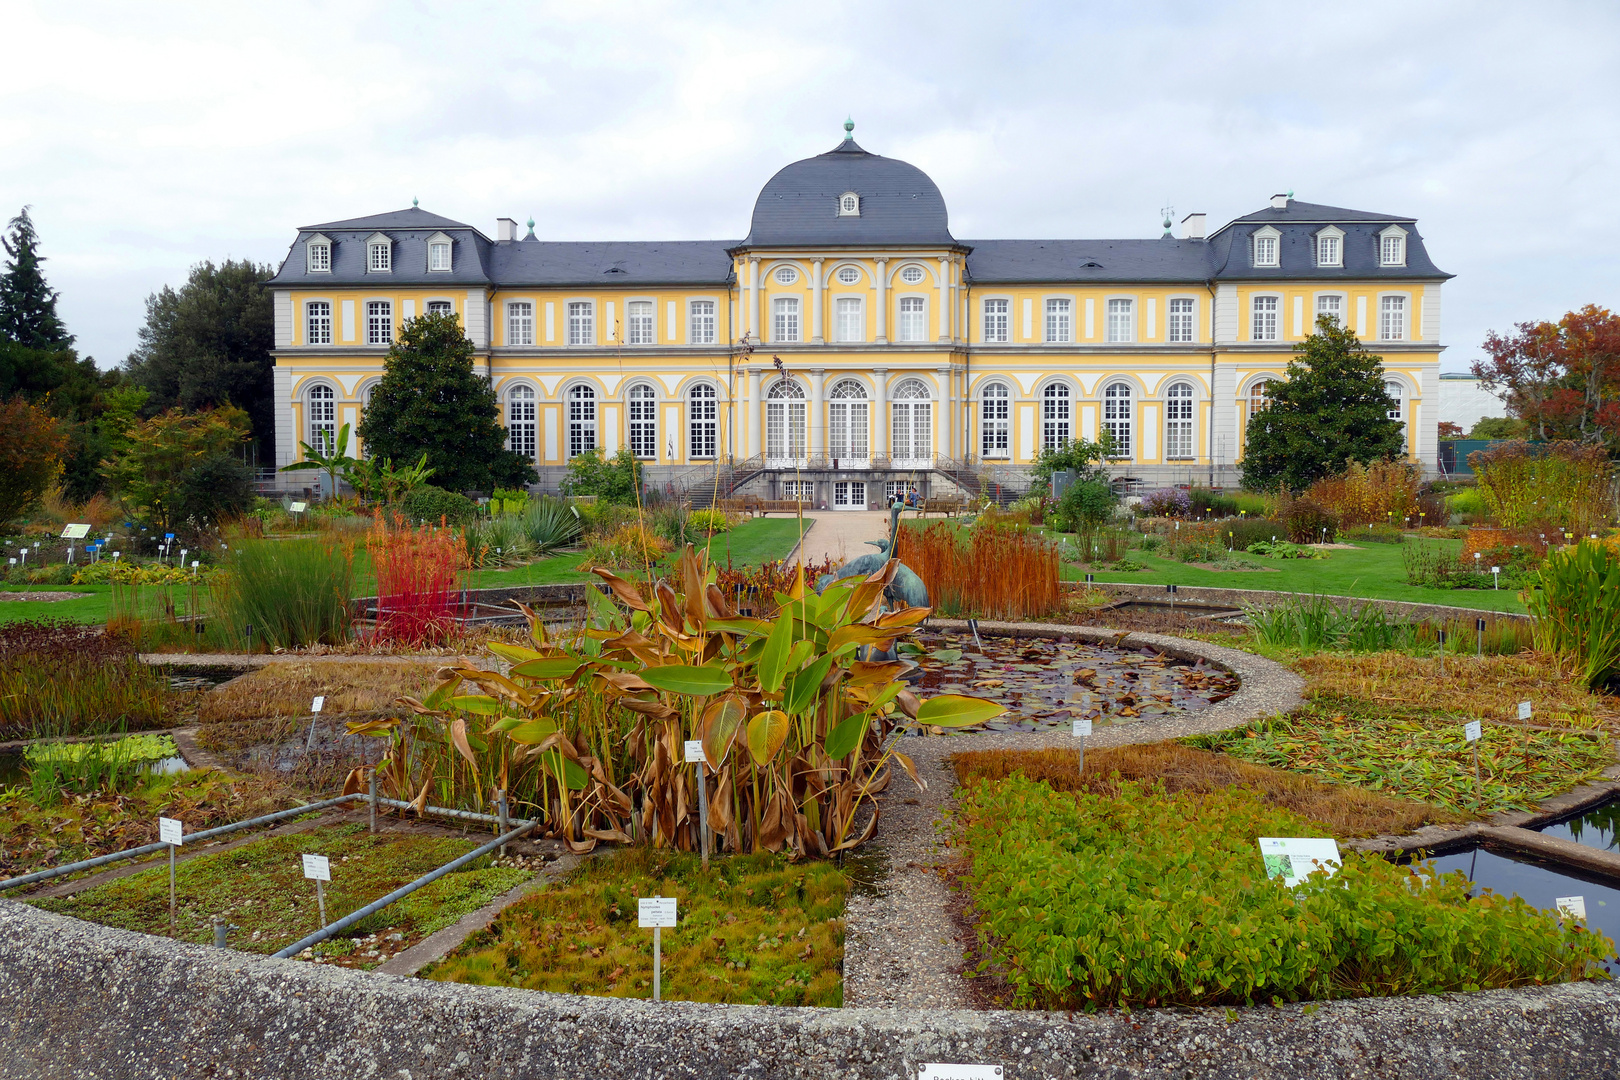 Poppelsdorfer Schloss in Bonn